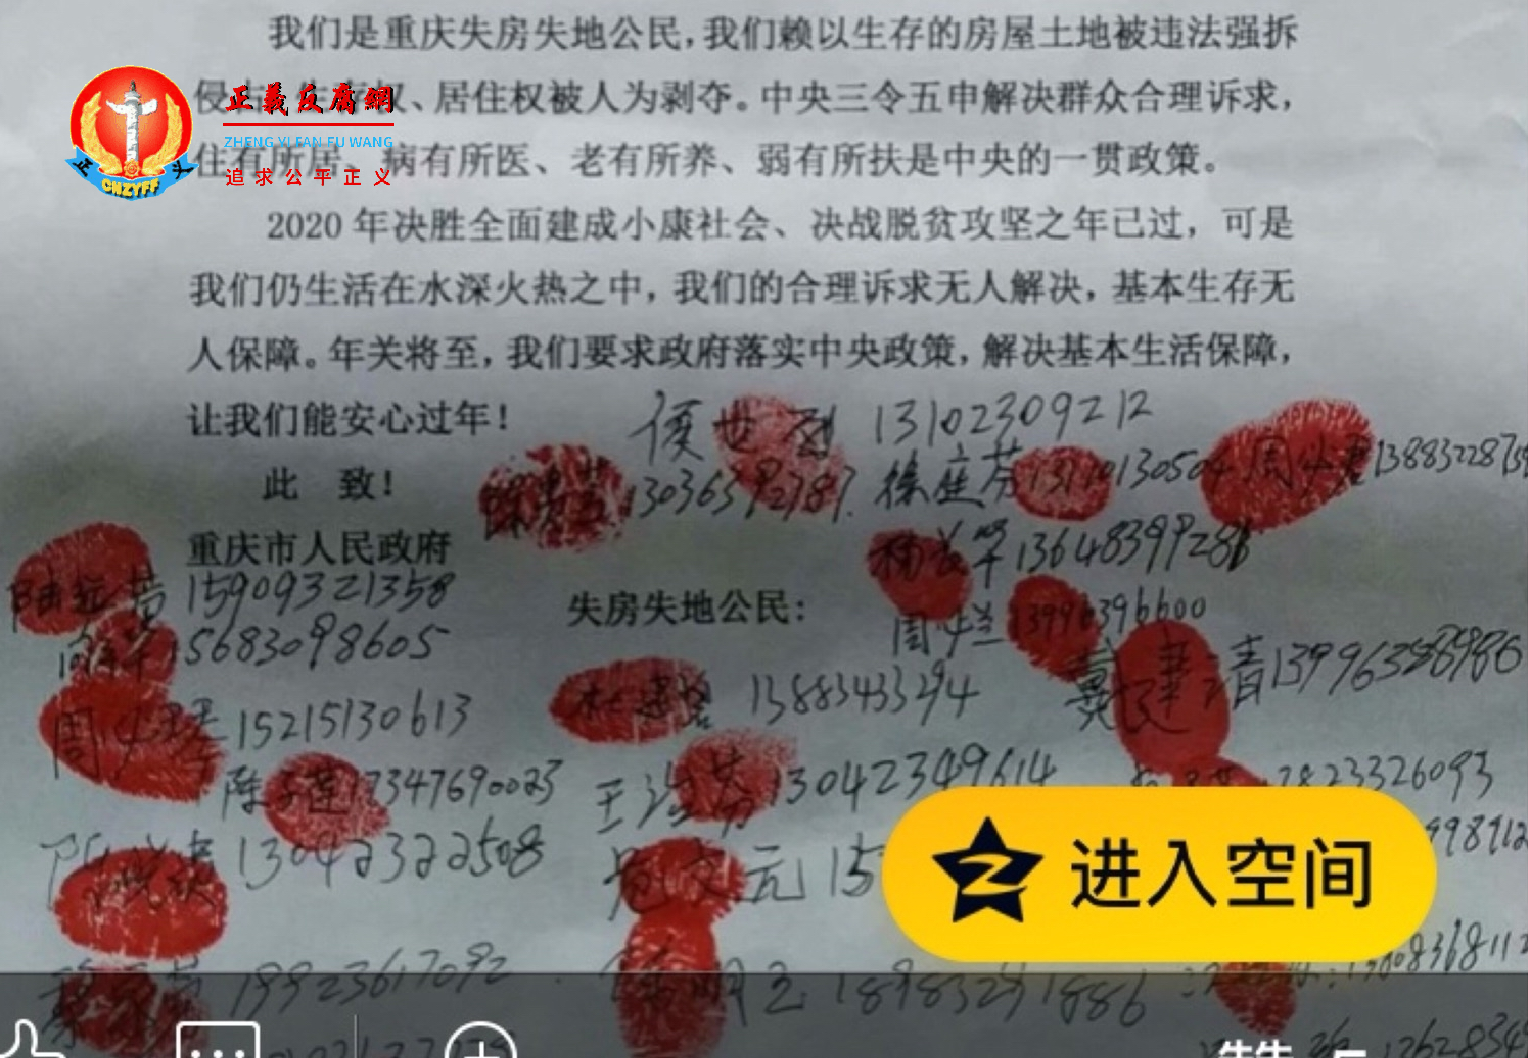 重庆27名失房失地公民集体信访要求保障其“两节”生活。.png